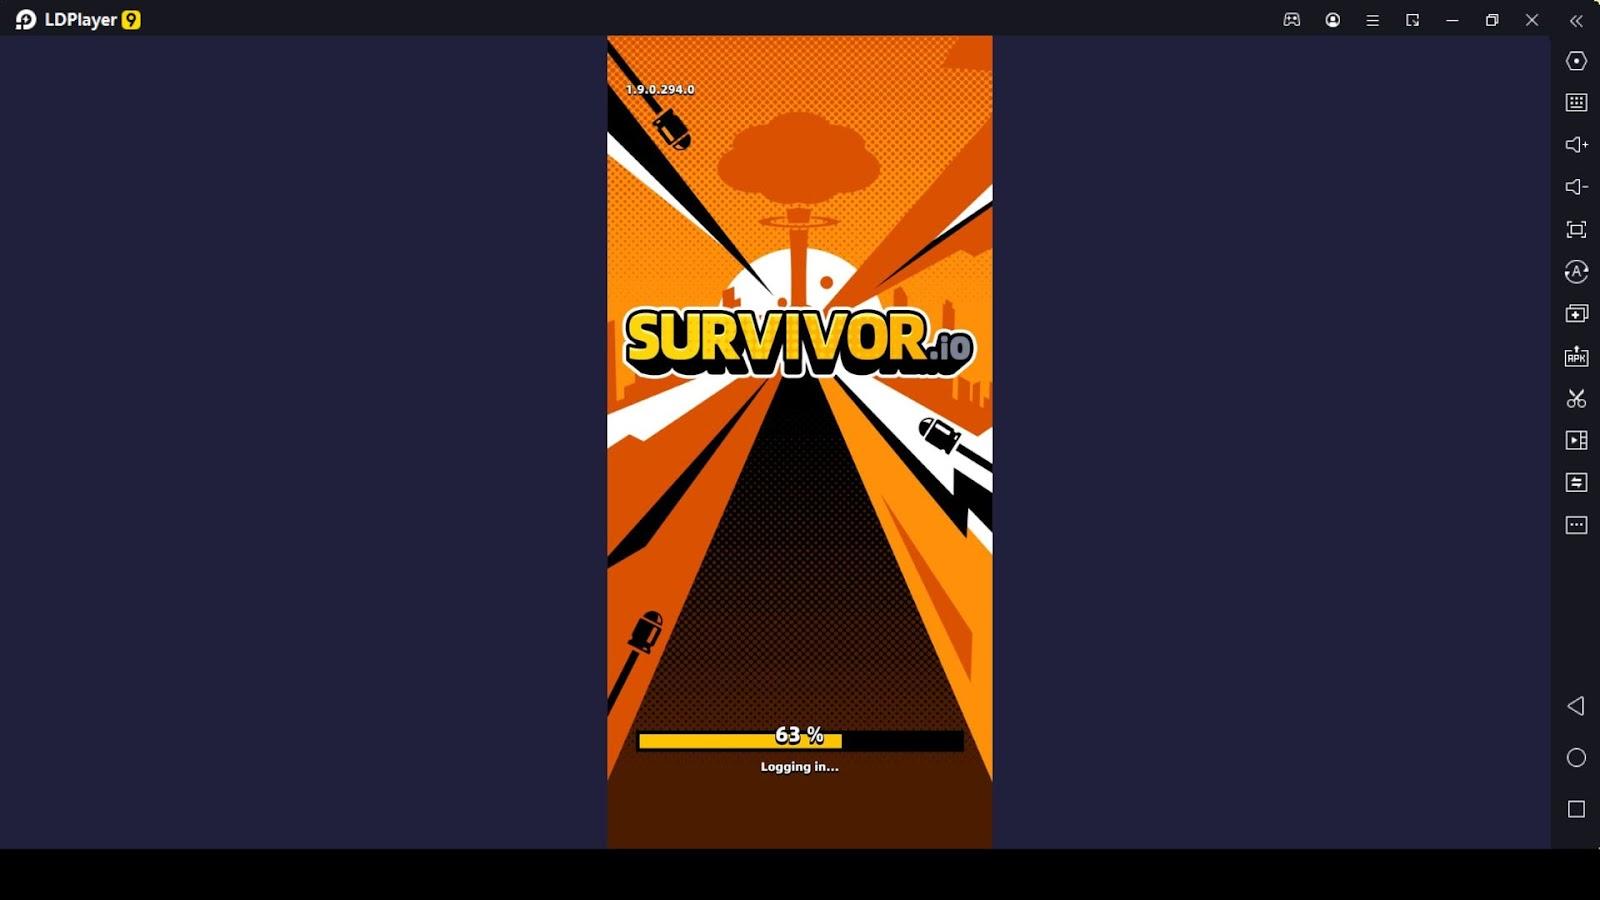 Survivor!.io : r/Survivorio